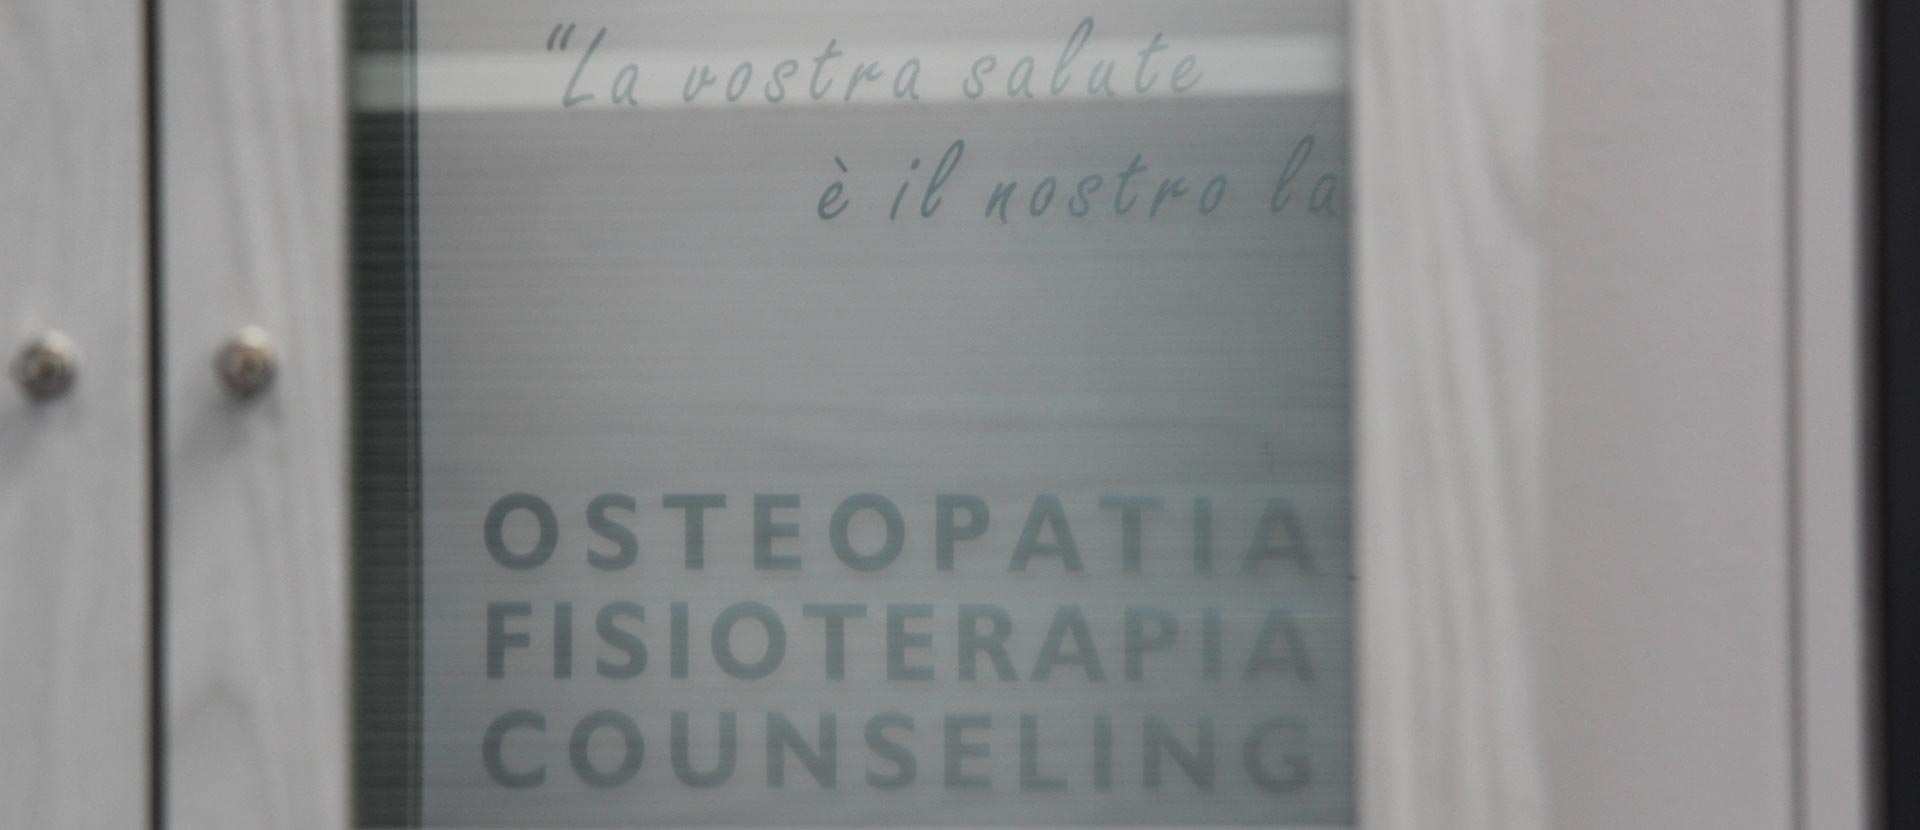 Studio Alphaomega | Fisioterapia Osteopatia Counseling Modena